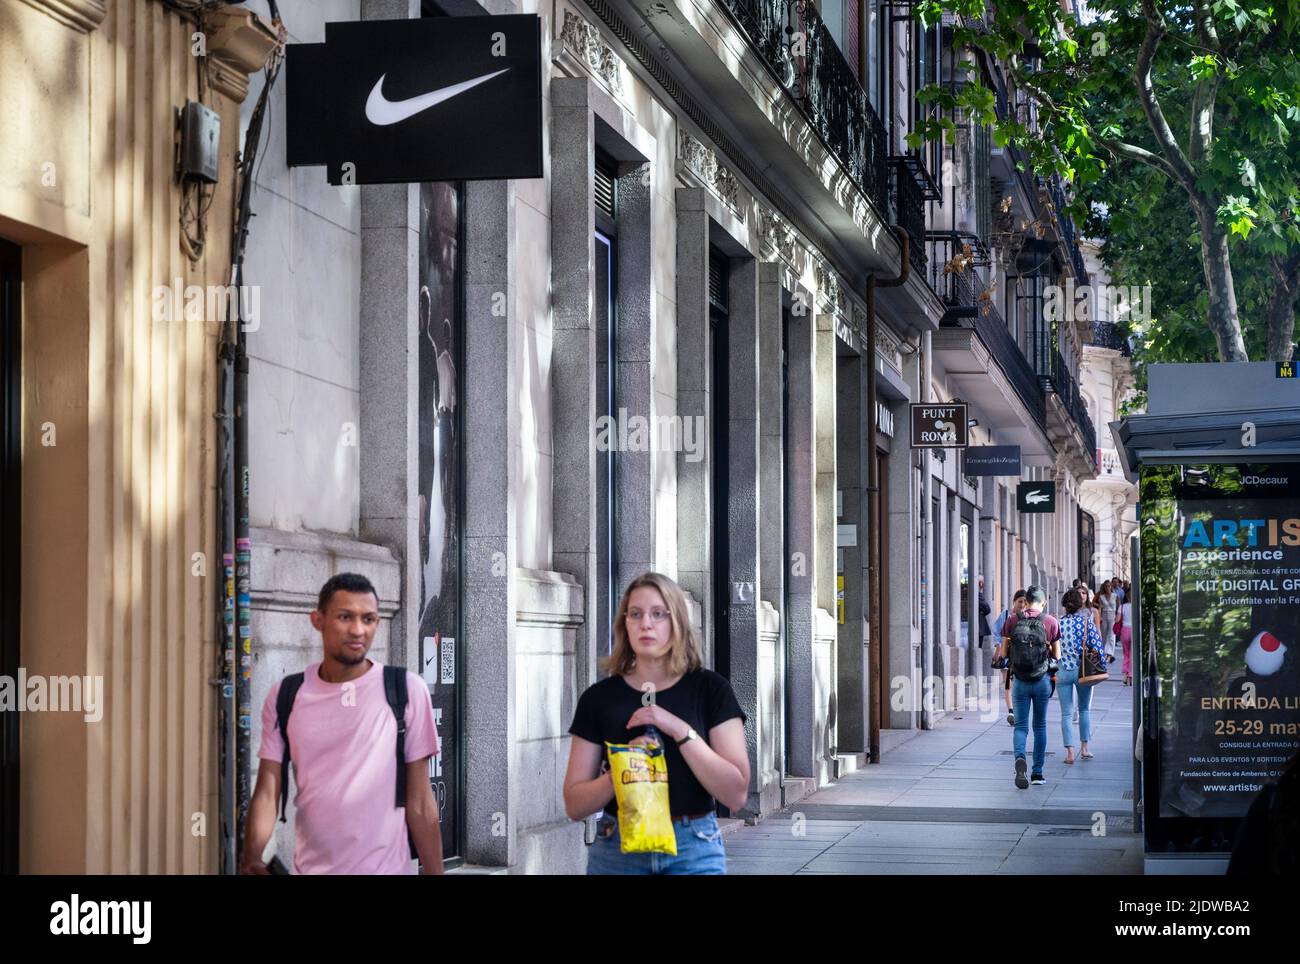 Madrid, España. 28th de mayo de 2022. Los peatones pasan de la tienda de ropa deportiva multinacional americana Nike en España. (Imagen de crédito: © Xavi Lopez/SOPA Images via ZUMA